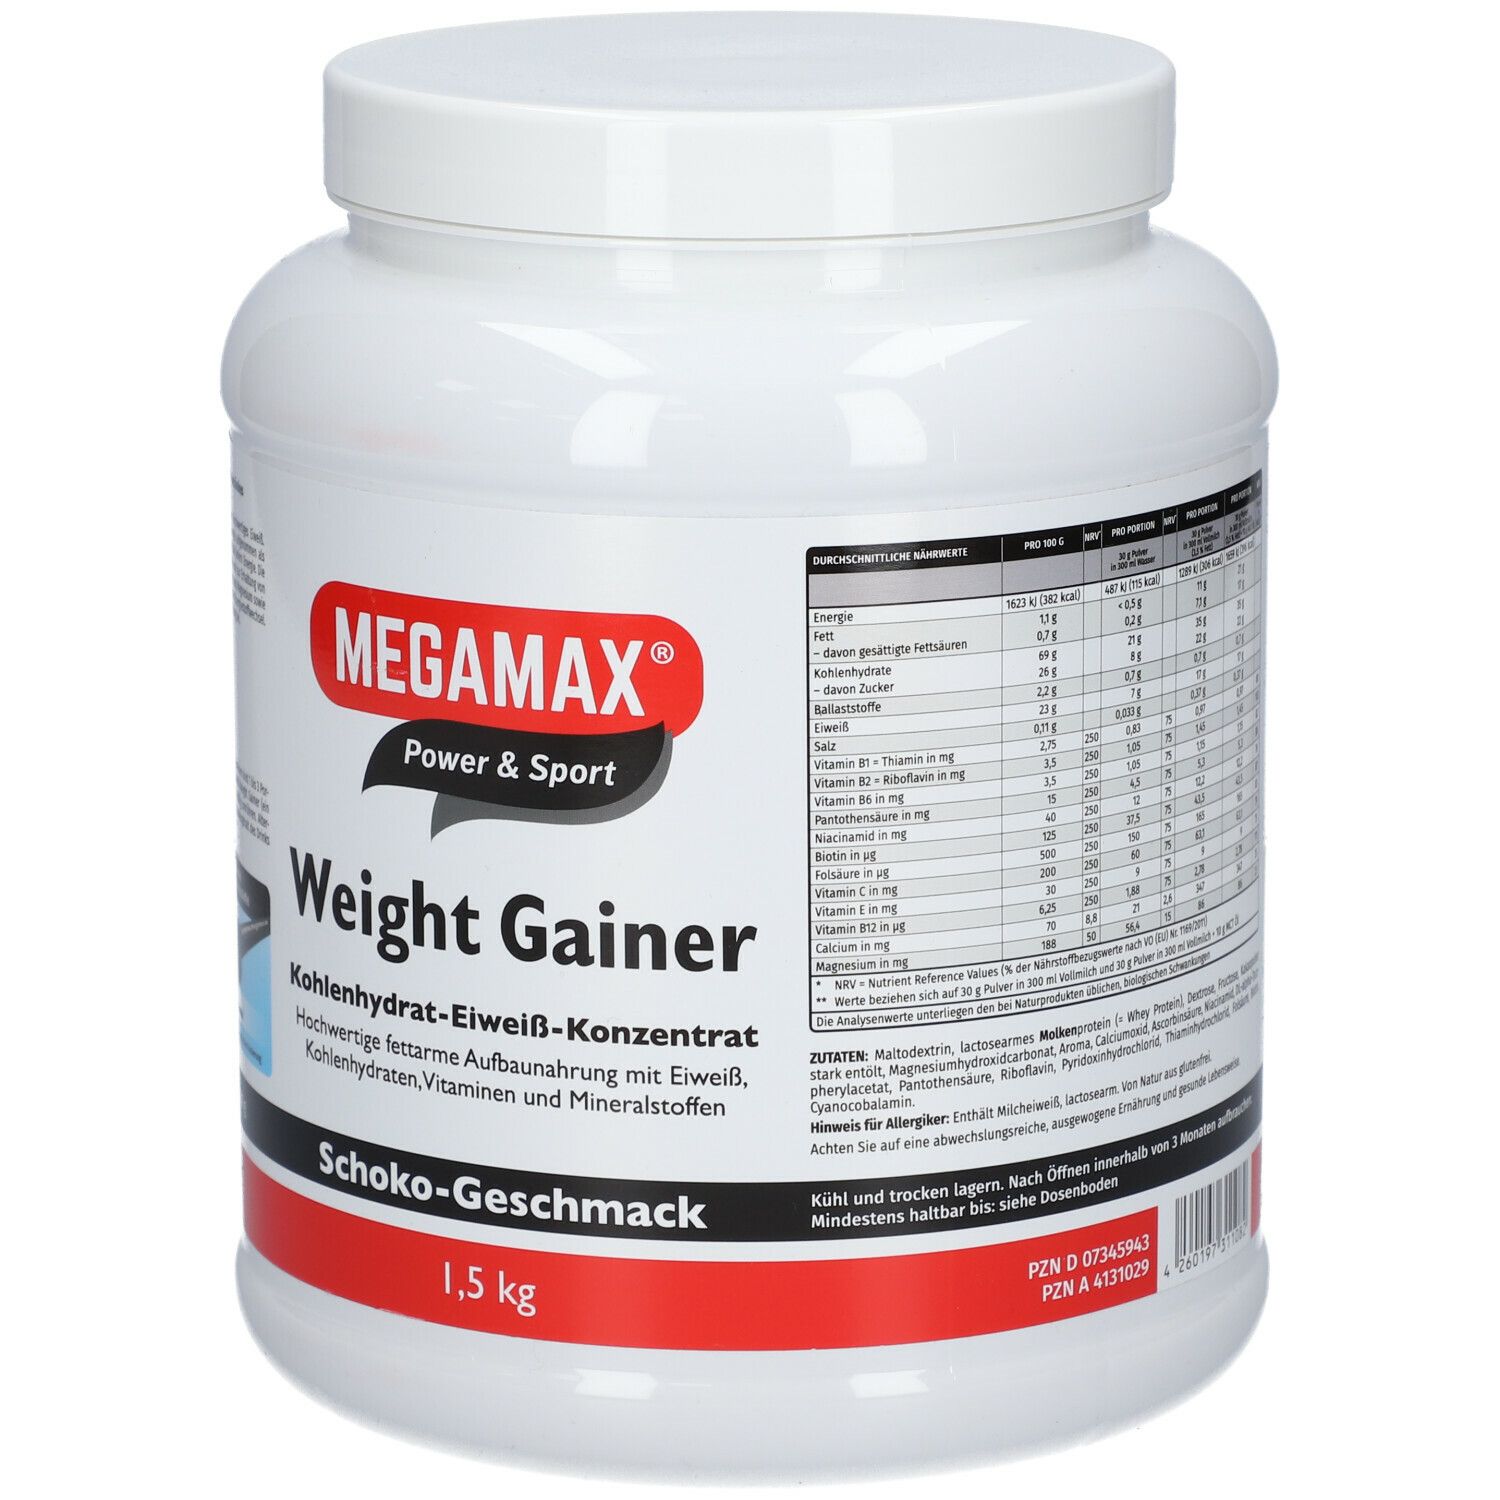 MEGAMAX® Power & Sport Weight Gainer Kohlenhydrat-Eiweiß-Konzentrat Schoko-Geschmack